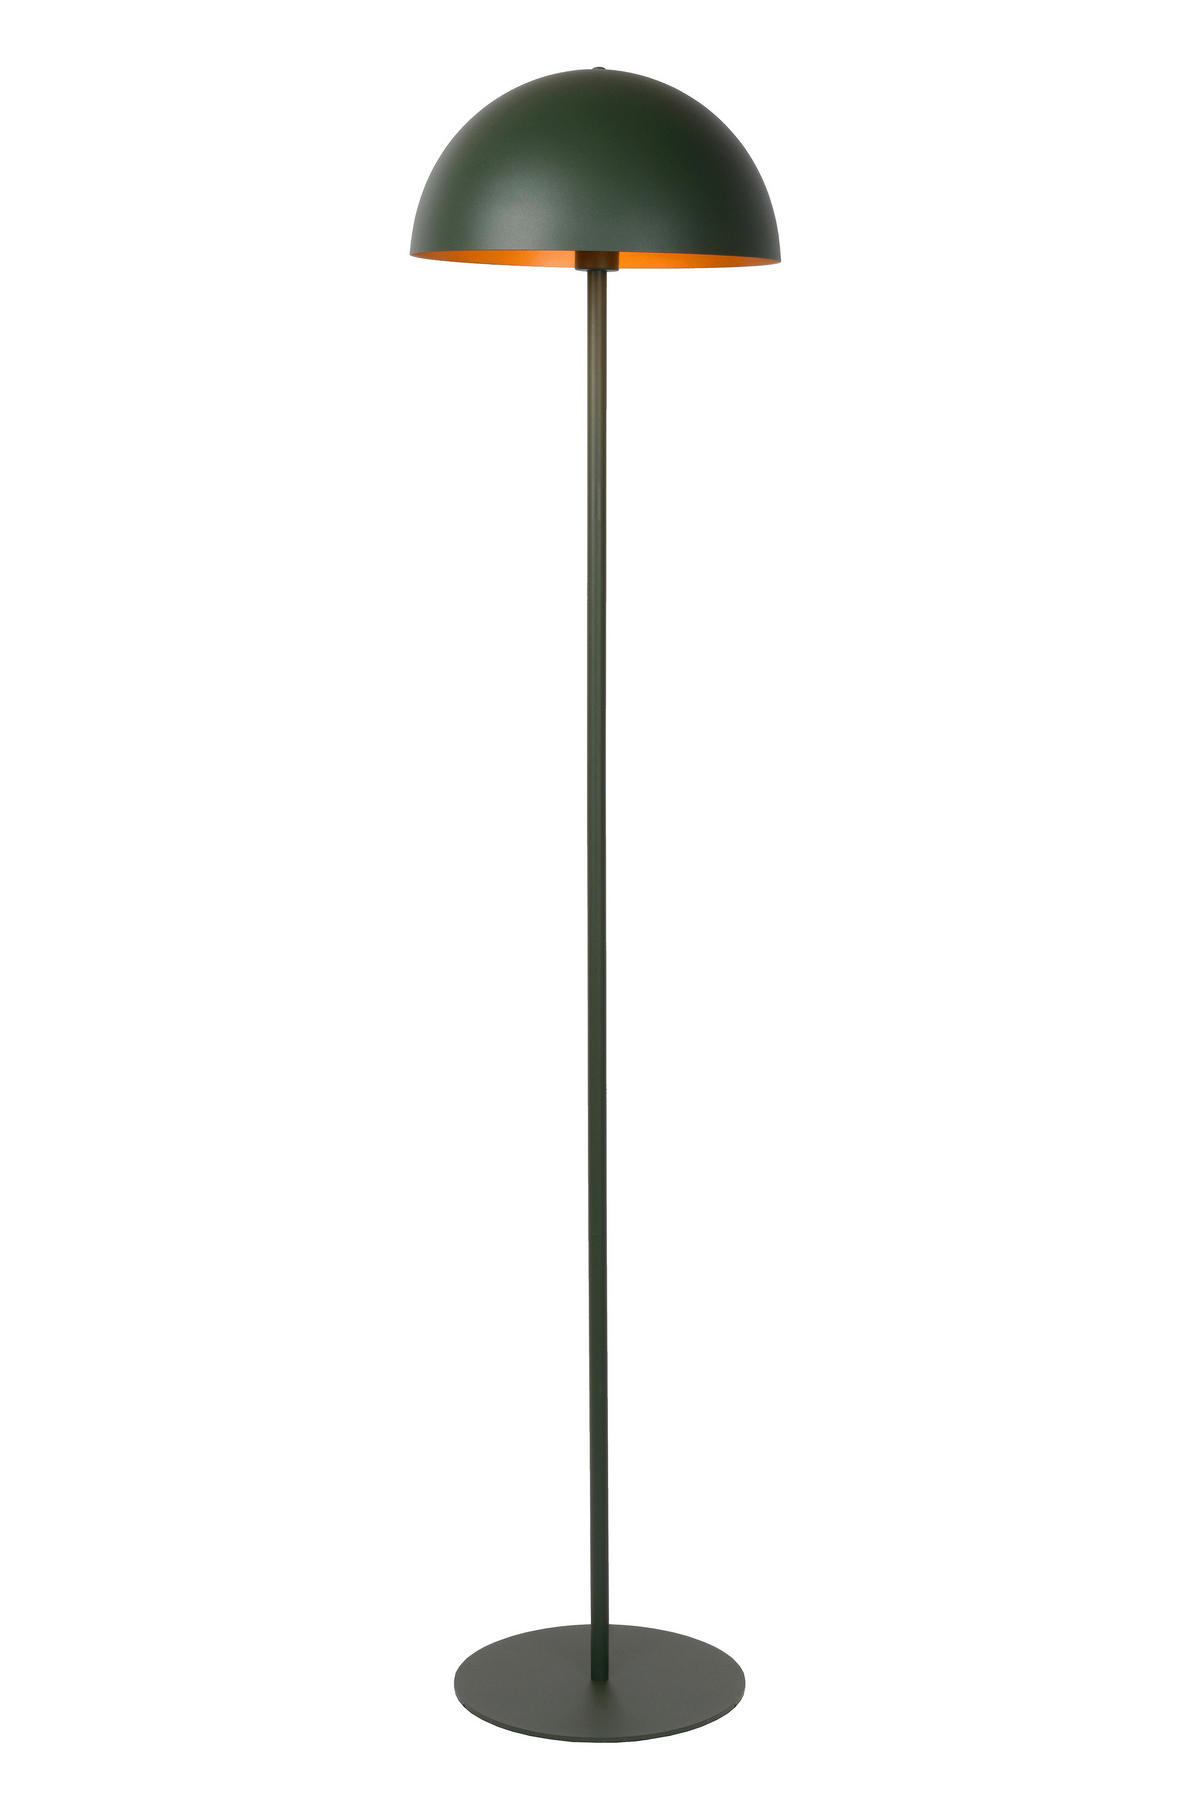 STEHLEUCHTE 160/35 cm    - Messingfarben/Grün, Design, Metall (160/35cm) - Lucide